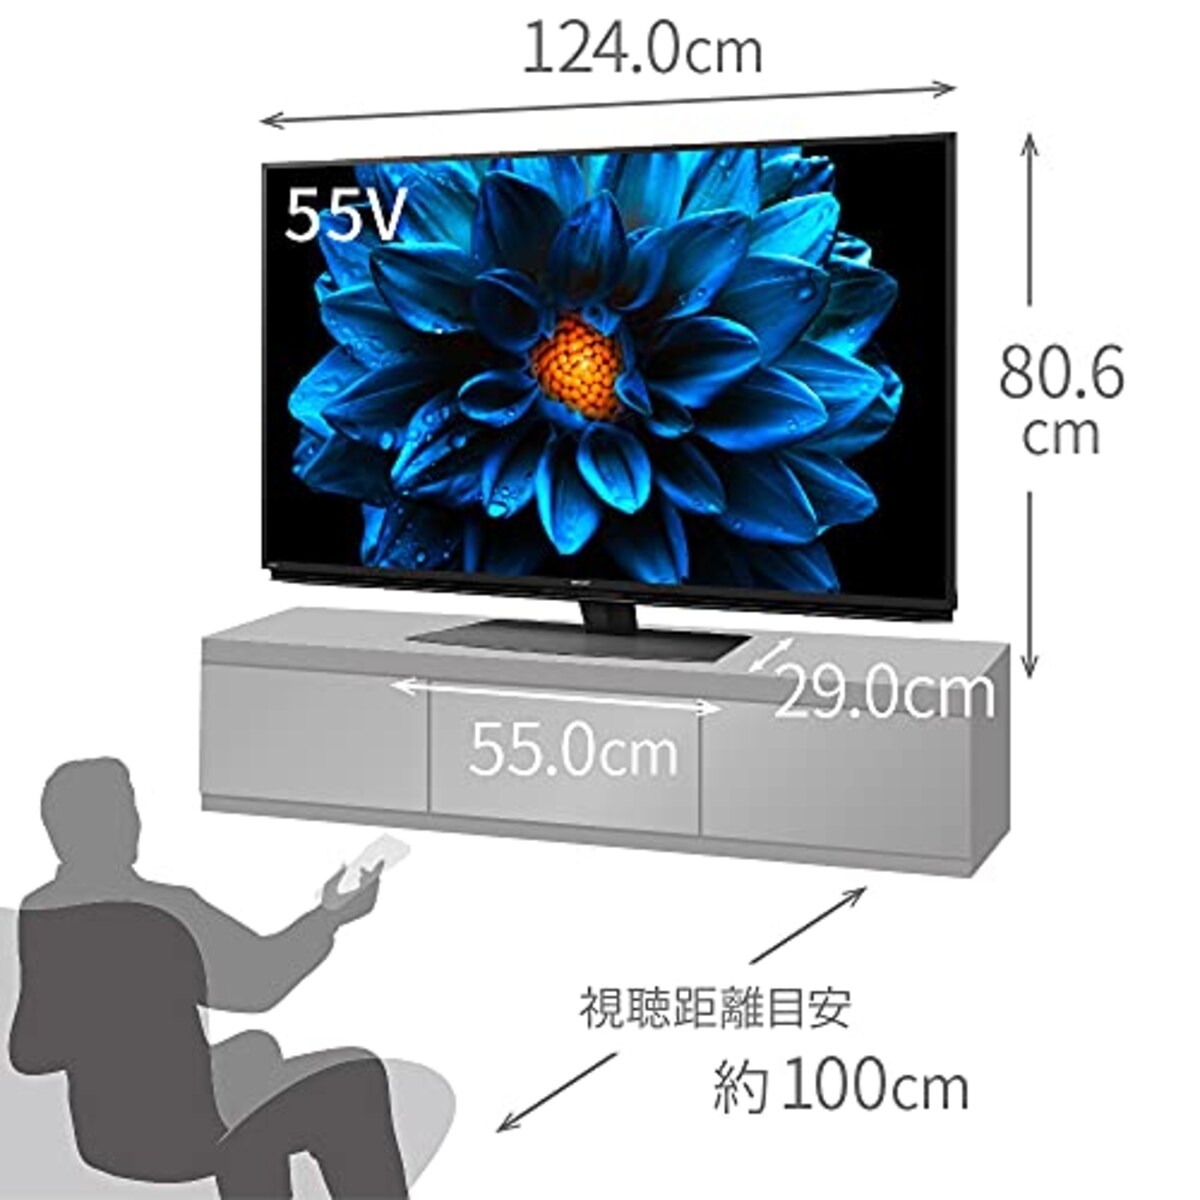  シャープ 55V型 4K 液晶 テレビ AQUOS 4T-C55DN1 N-Blackパネル 倍速液晶 Android TV (2021年モデル)画像2 